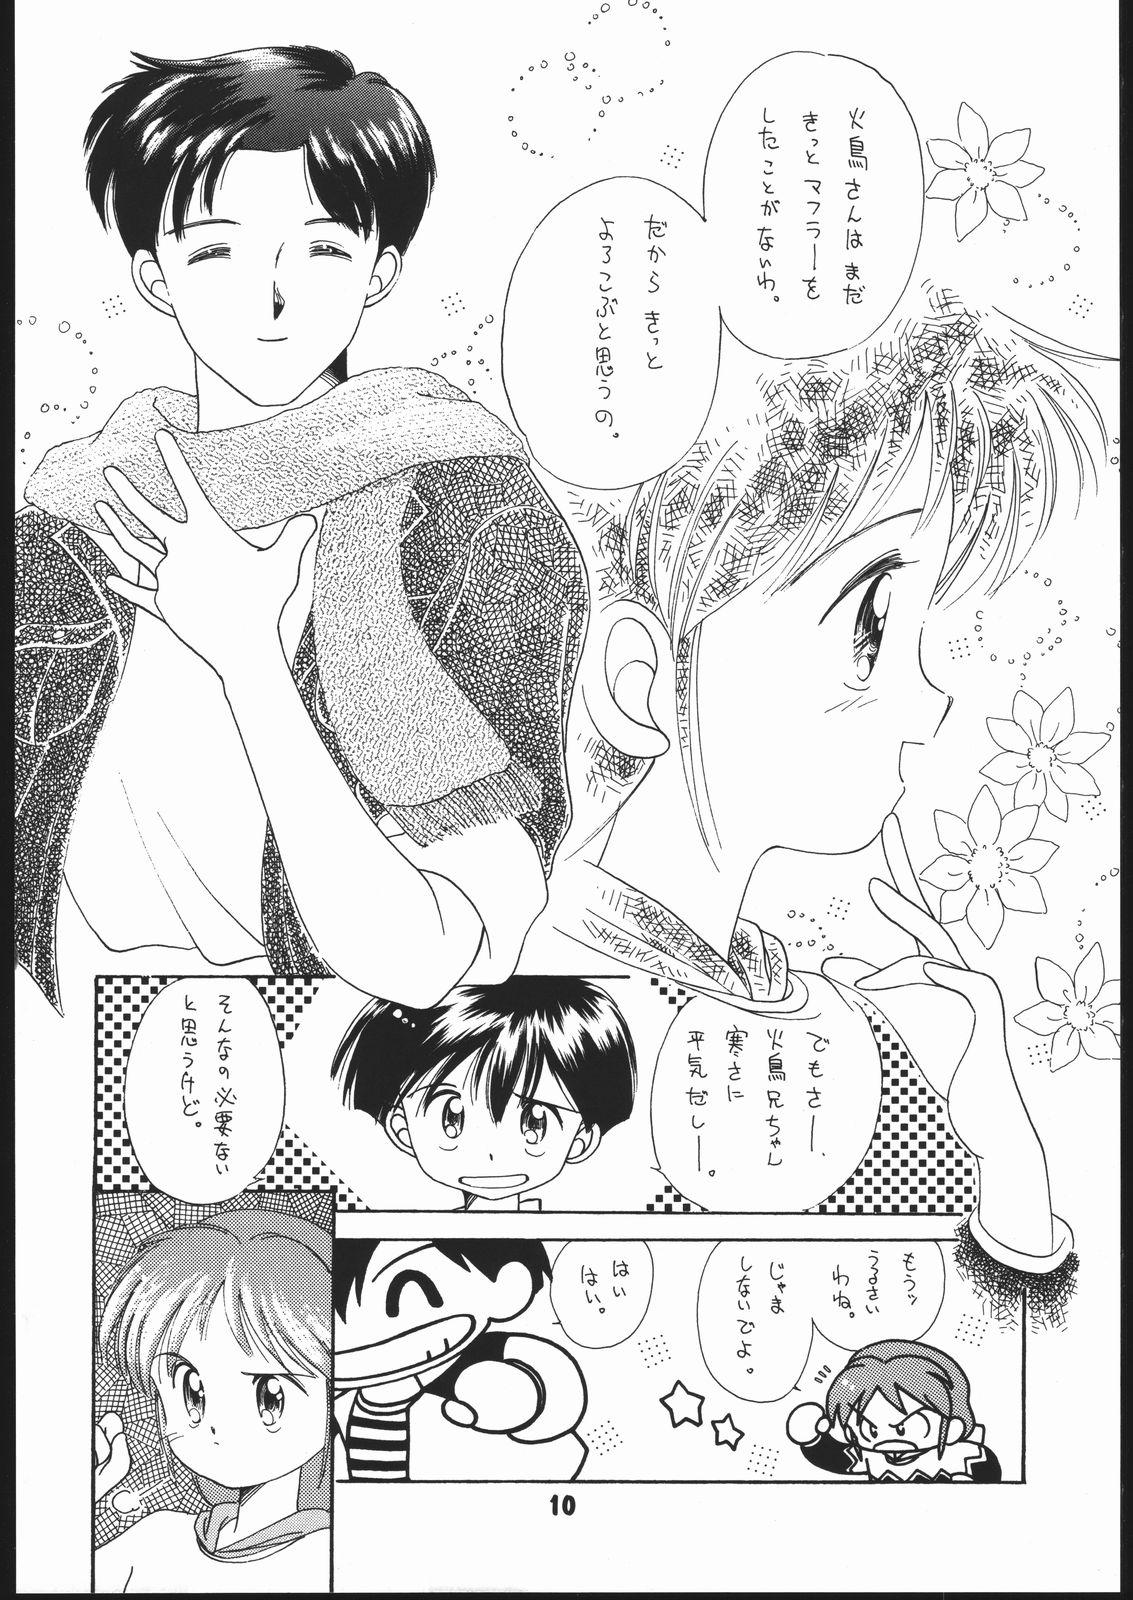 Bubblebutt Sarudoshi yo! Konnichiwa. - Idol densetsu eriko Magical taruruuto kun 18yo - Page 9